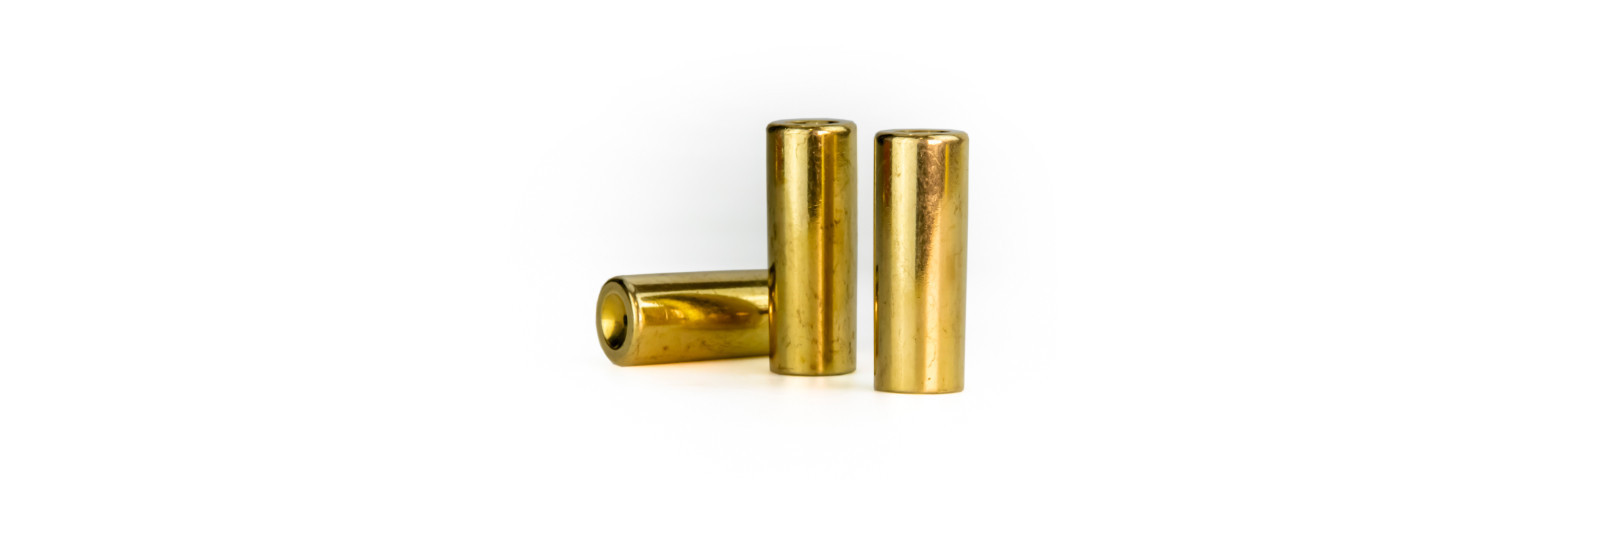 10 brass cases for .547 original bullet